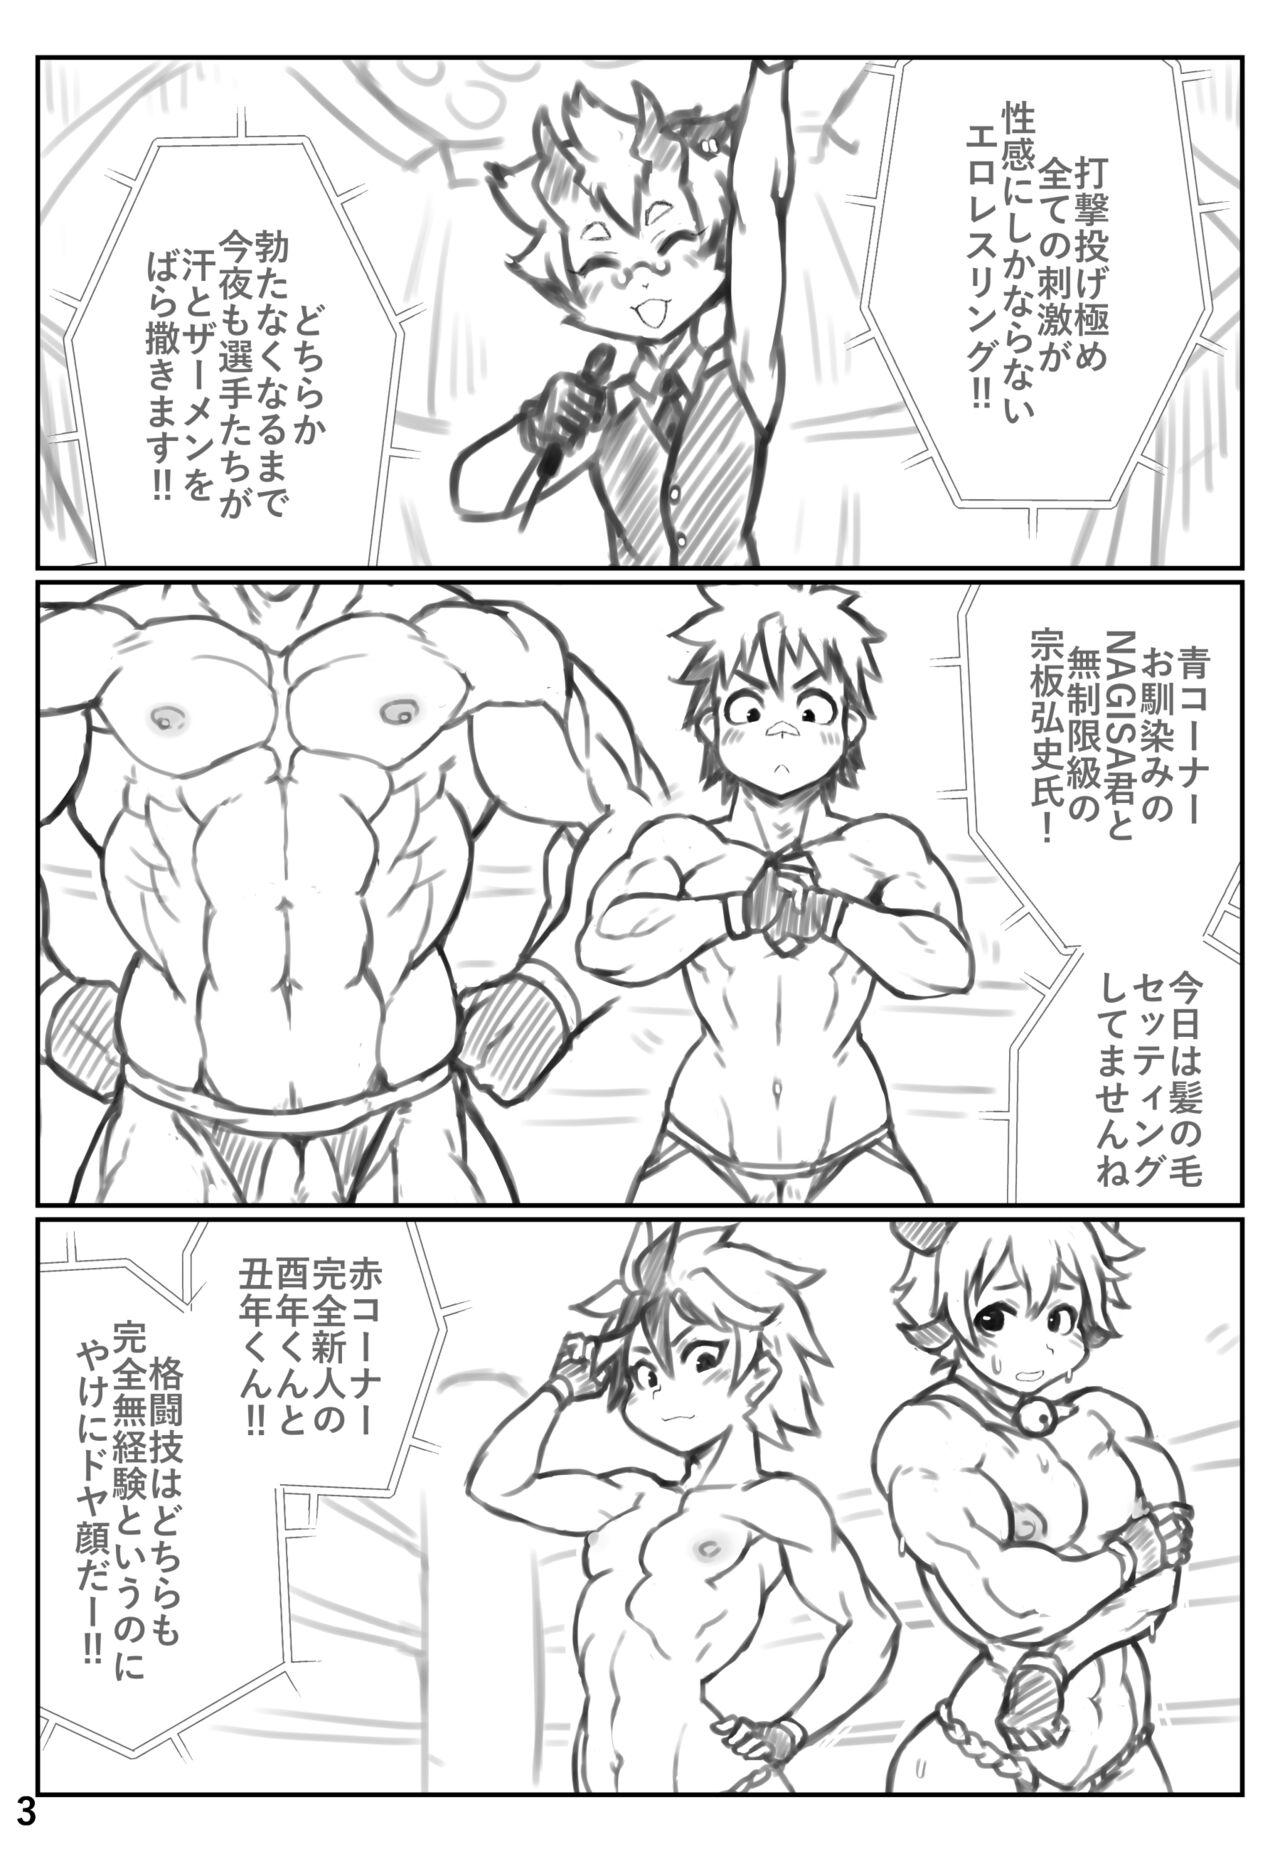 Ball Busting Puroresu ♂ o yattenai nanika - Original Assgape - Page 2